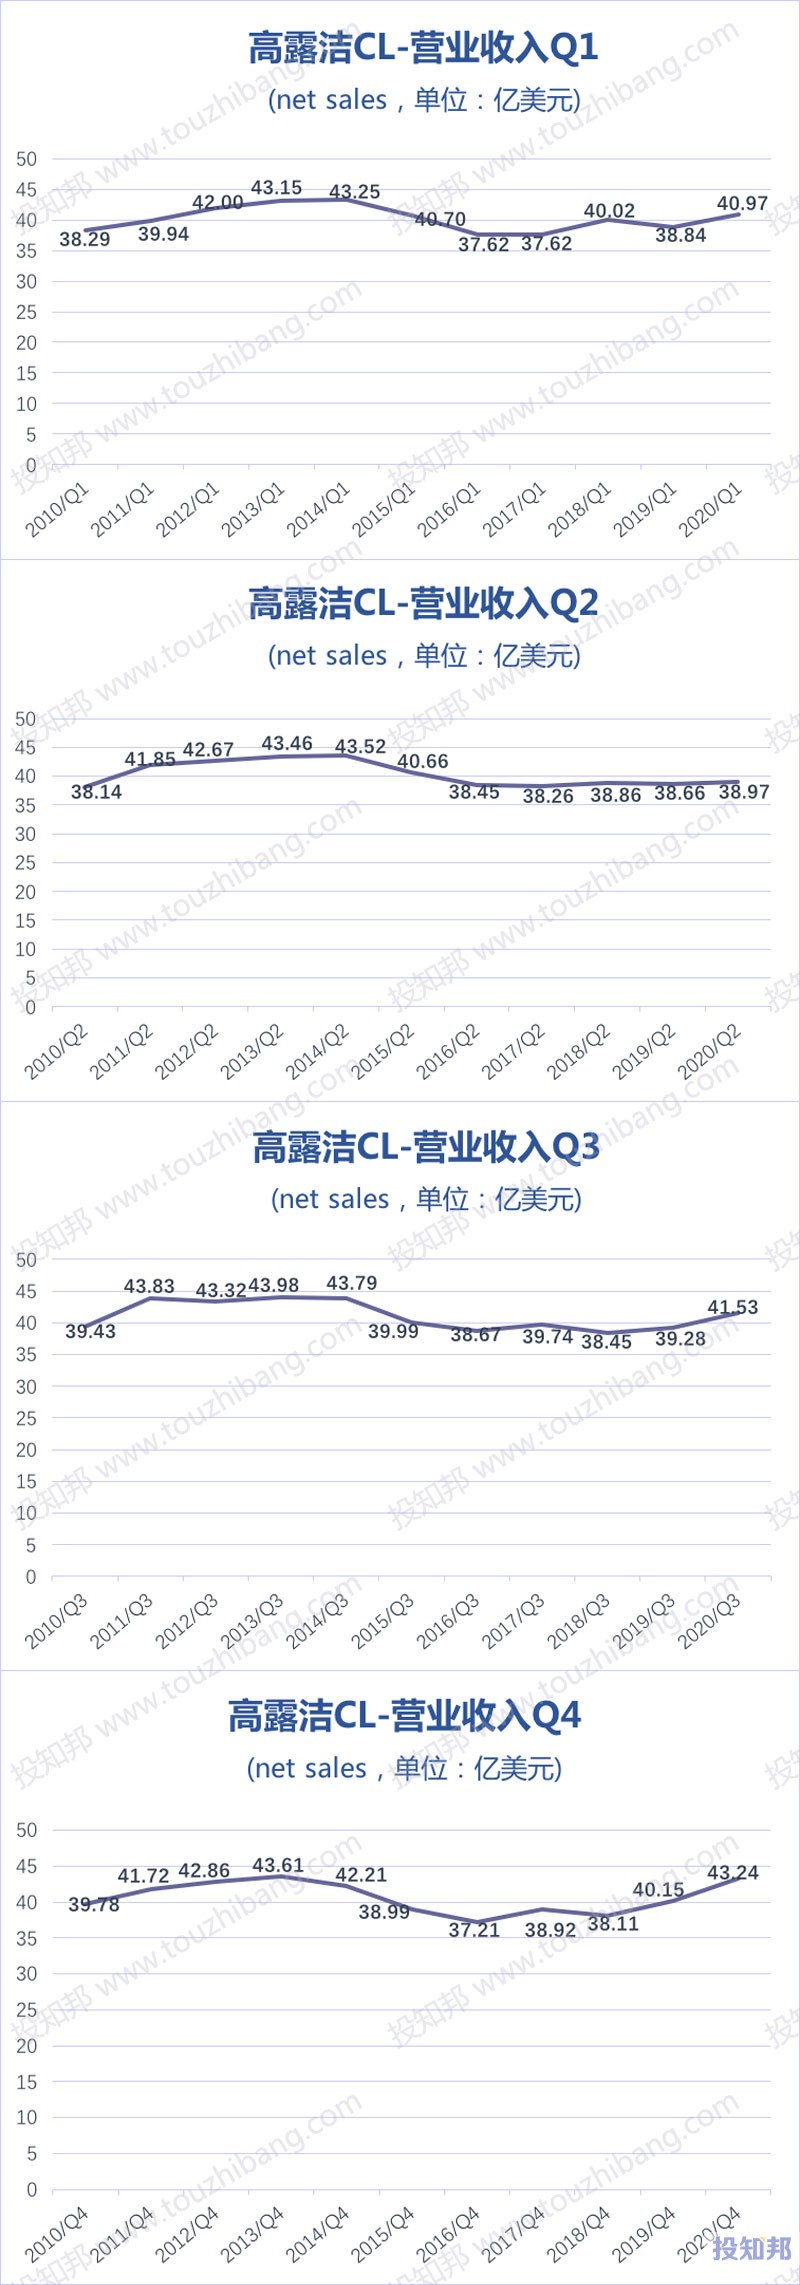 高露洁(CL)财报数据图示(2010年~2020年，更新)